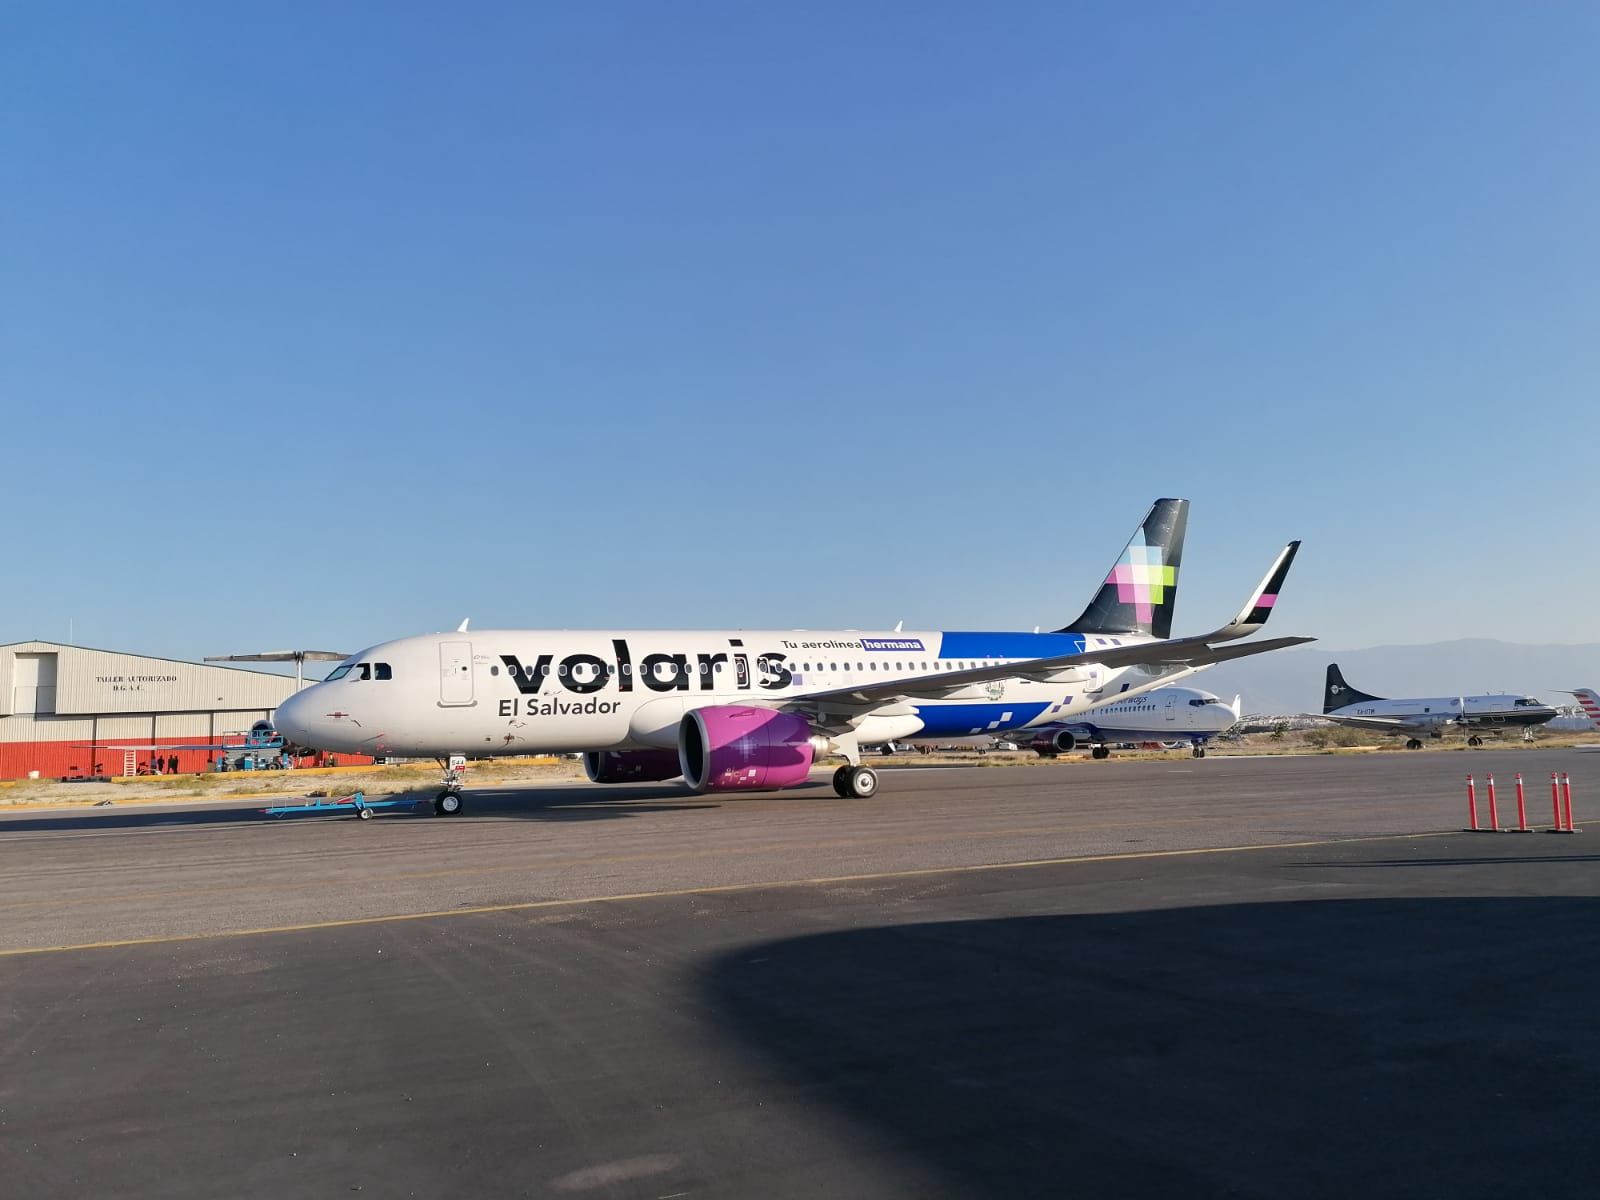 A Volaris El Salvador aircraft